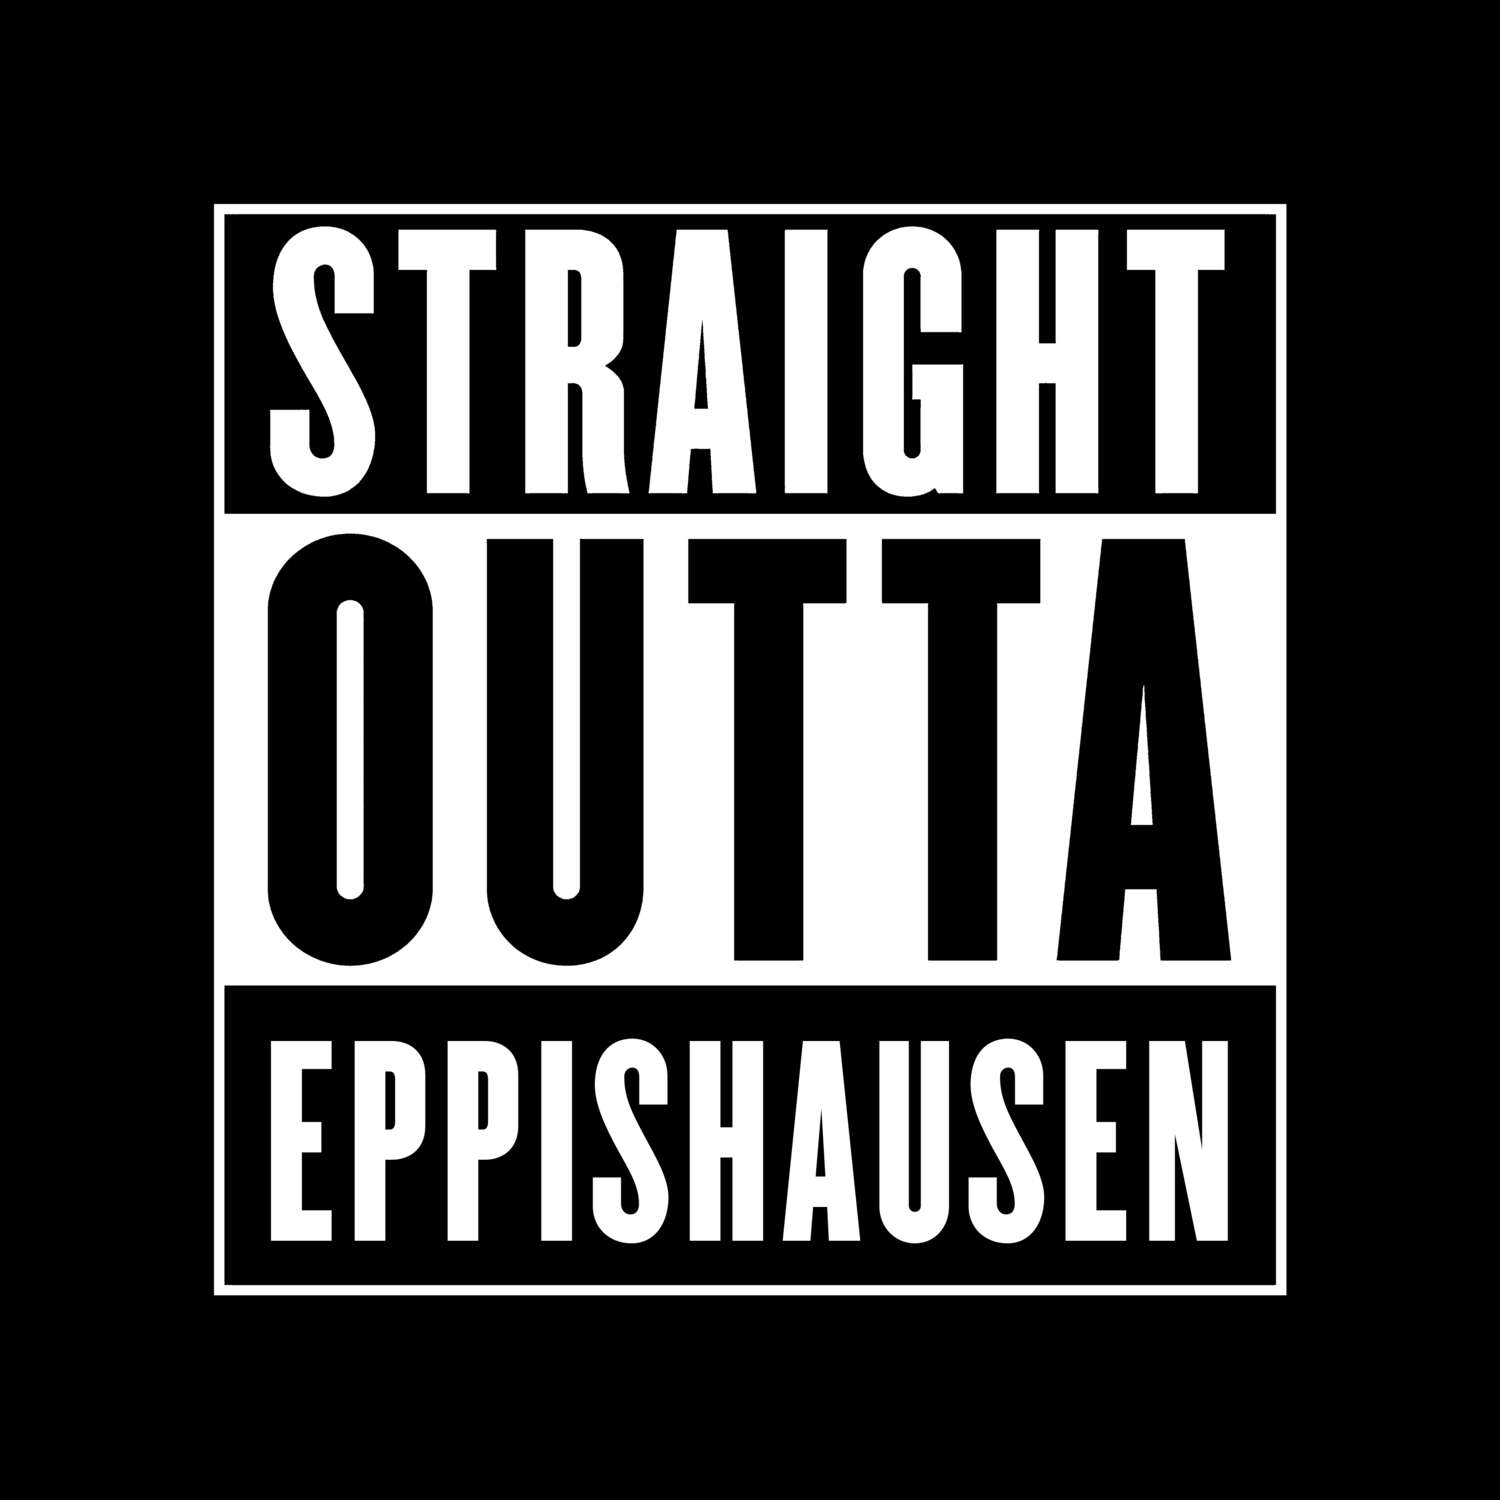 Eppishausen T-Shirt »Straight Outta«